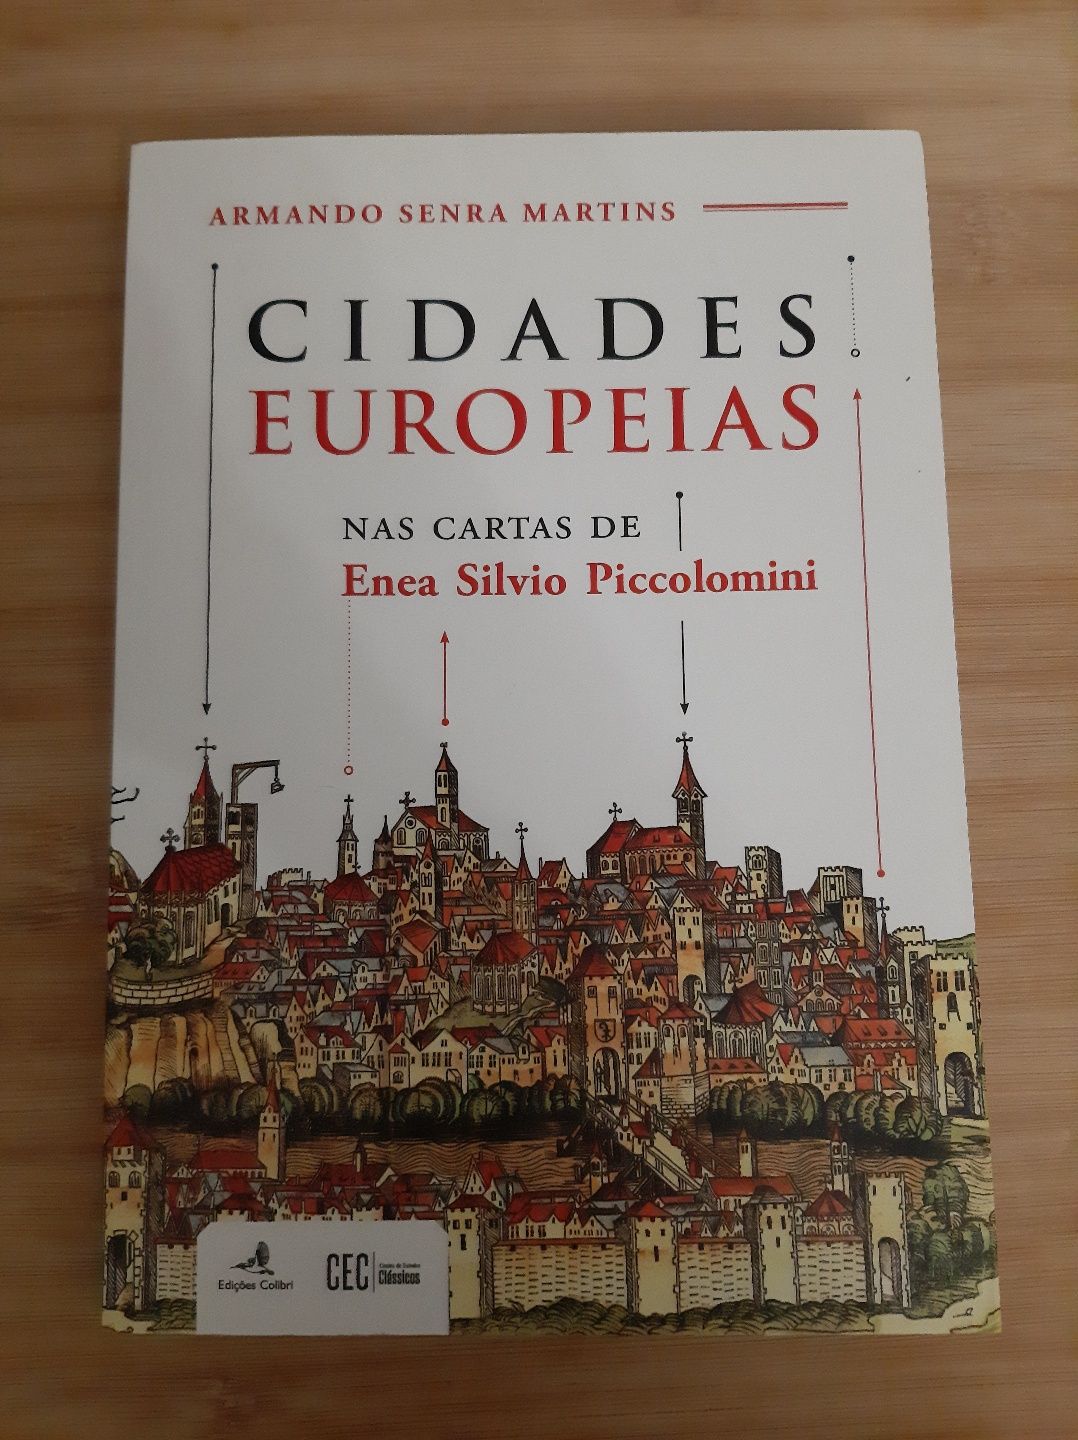 Livro "Cidades Europeias " de Armando Senra Martins